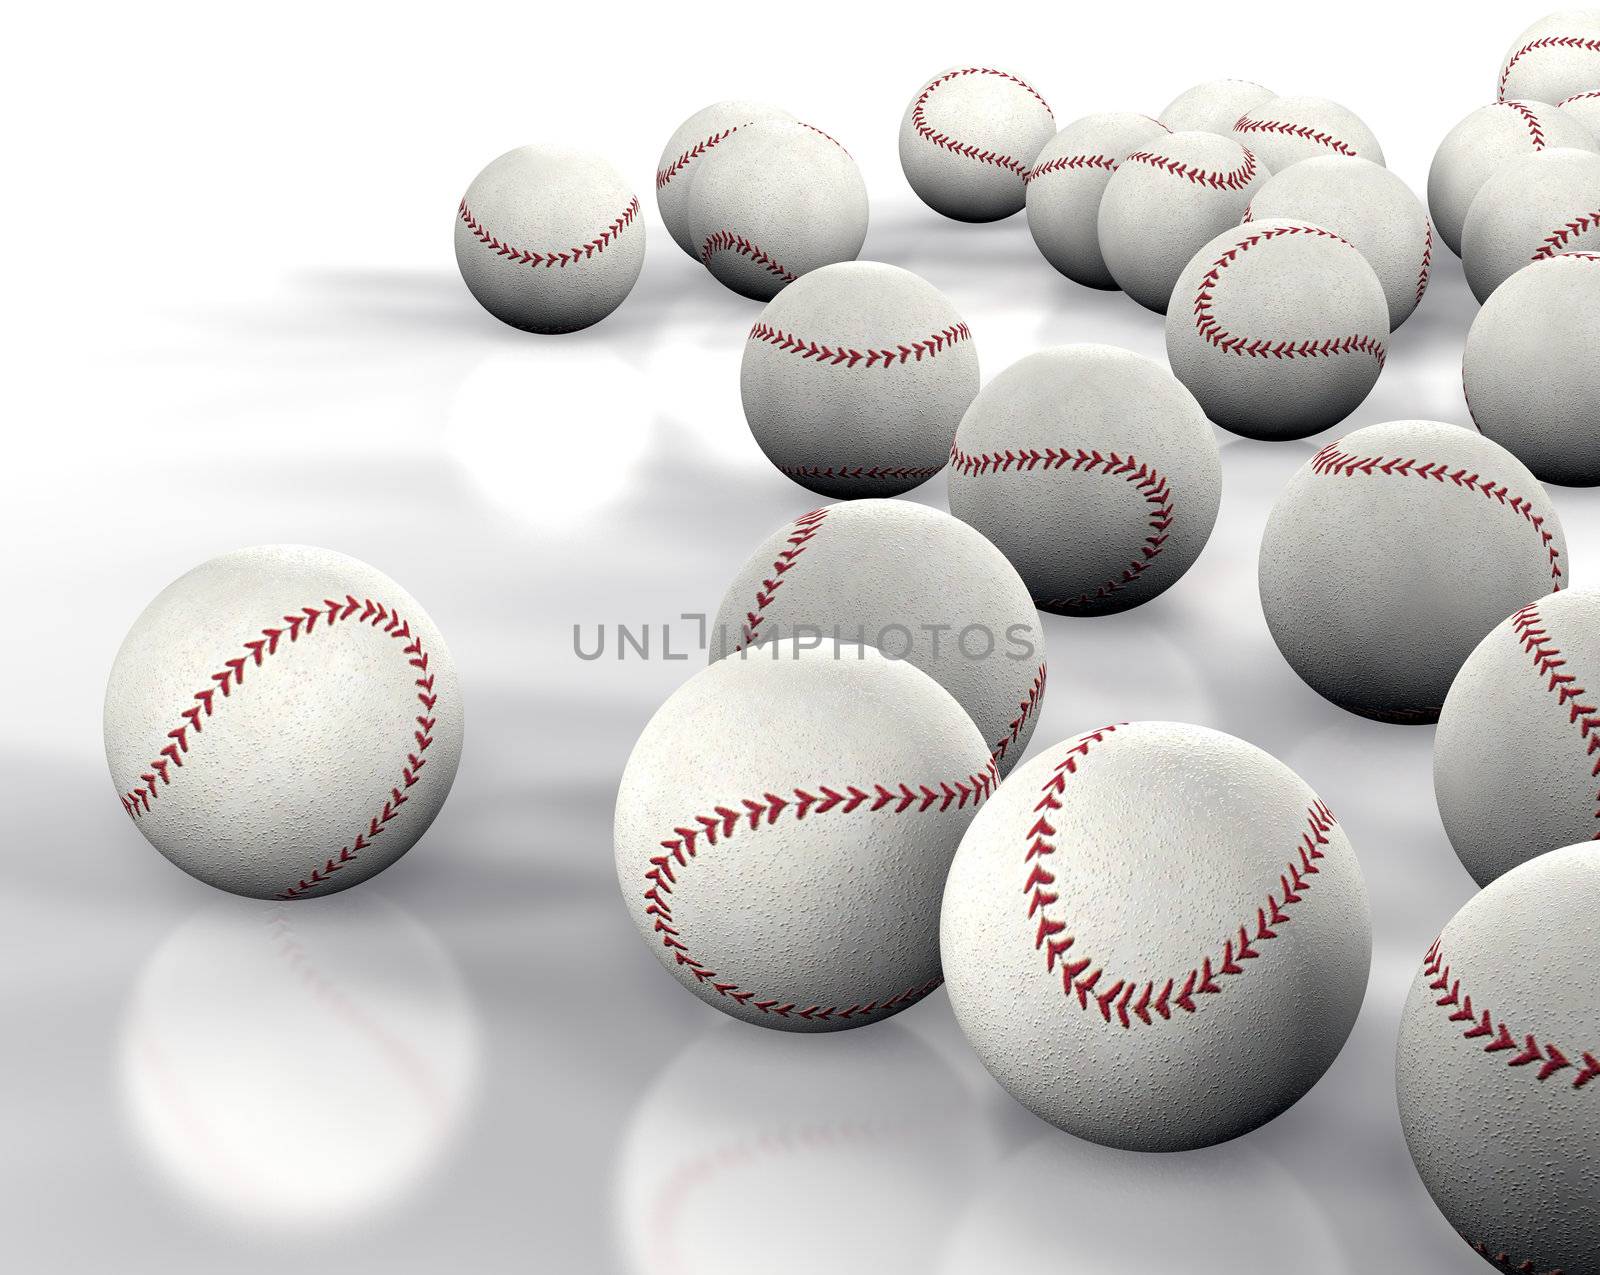 3D image many baseballs isolated on white